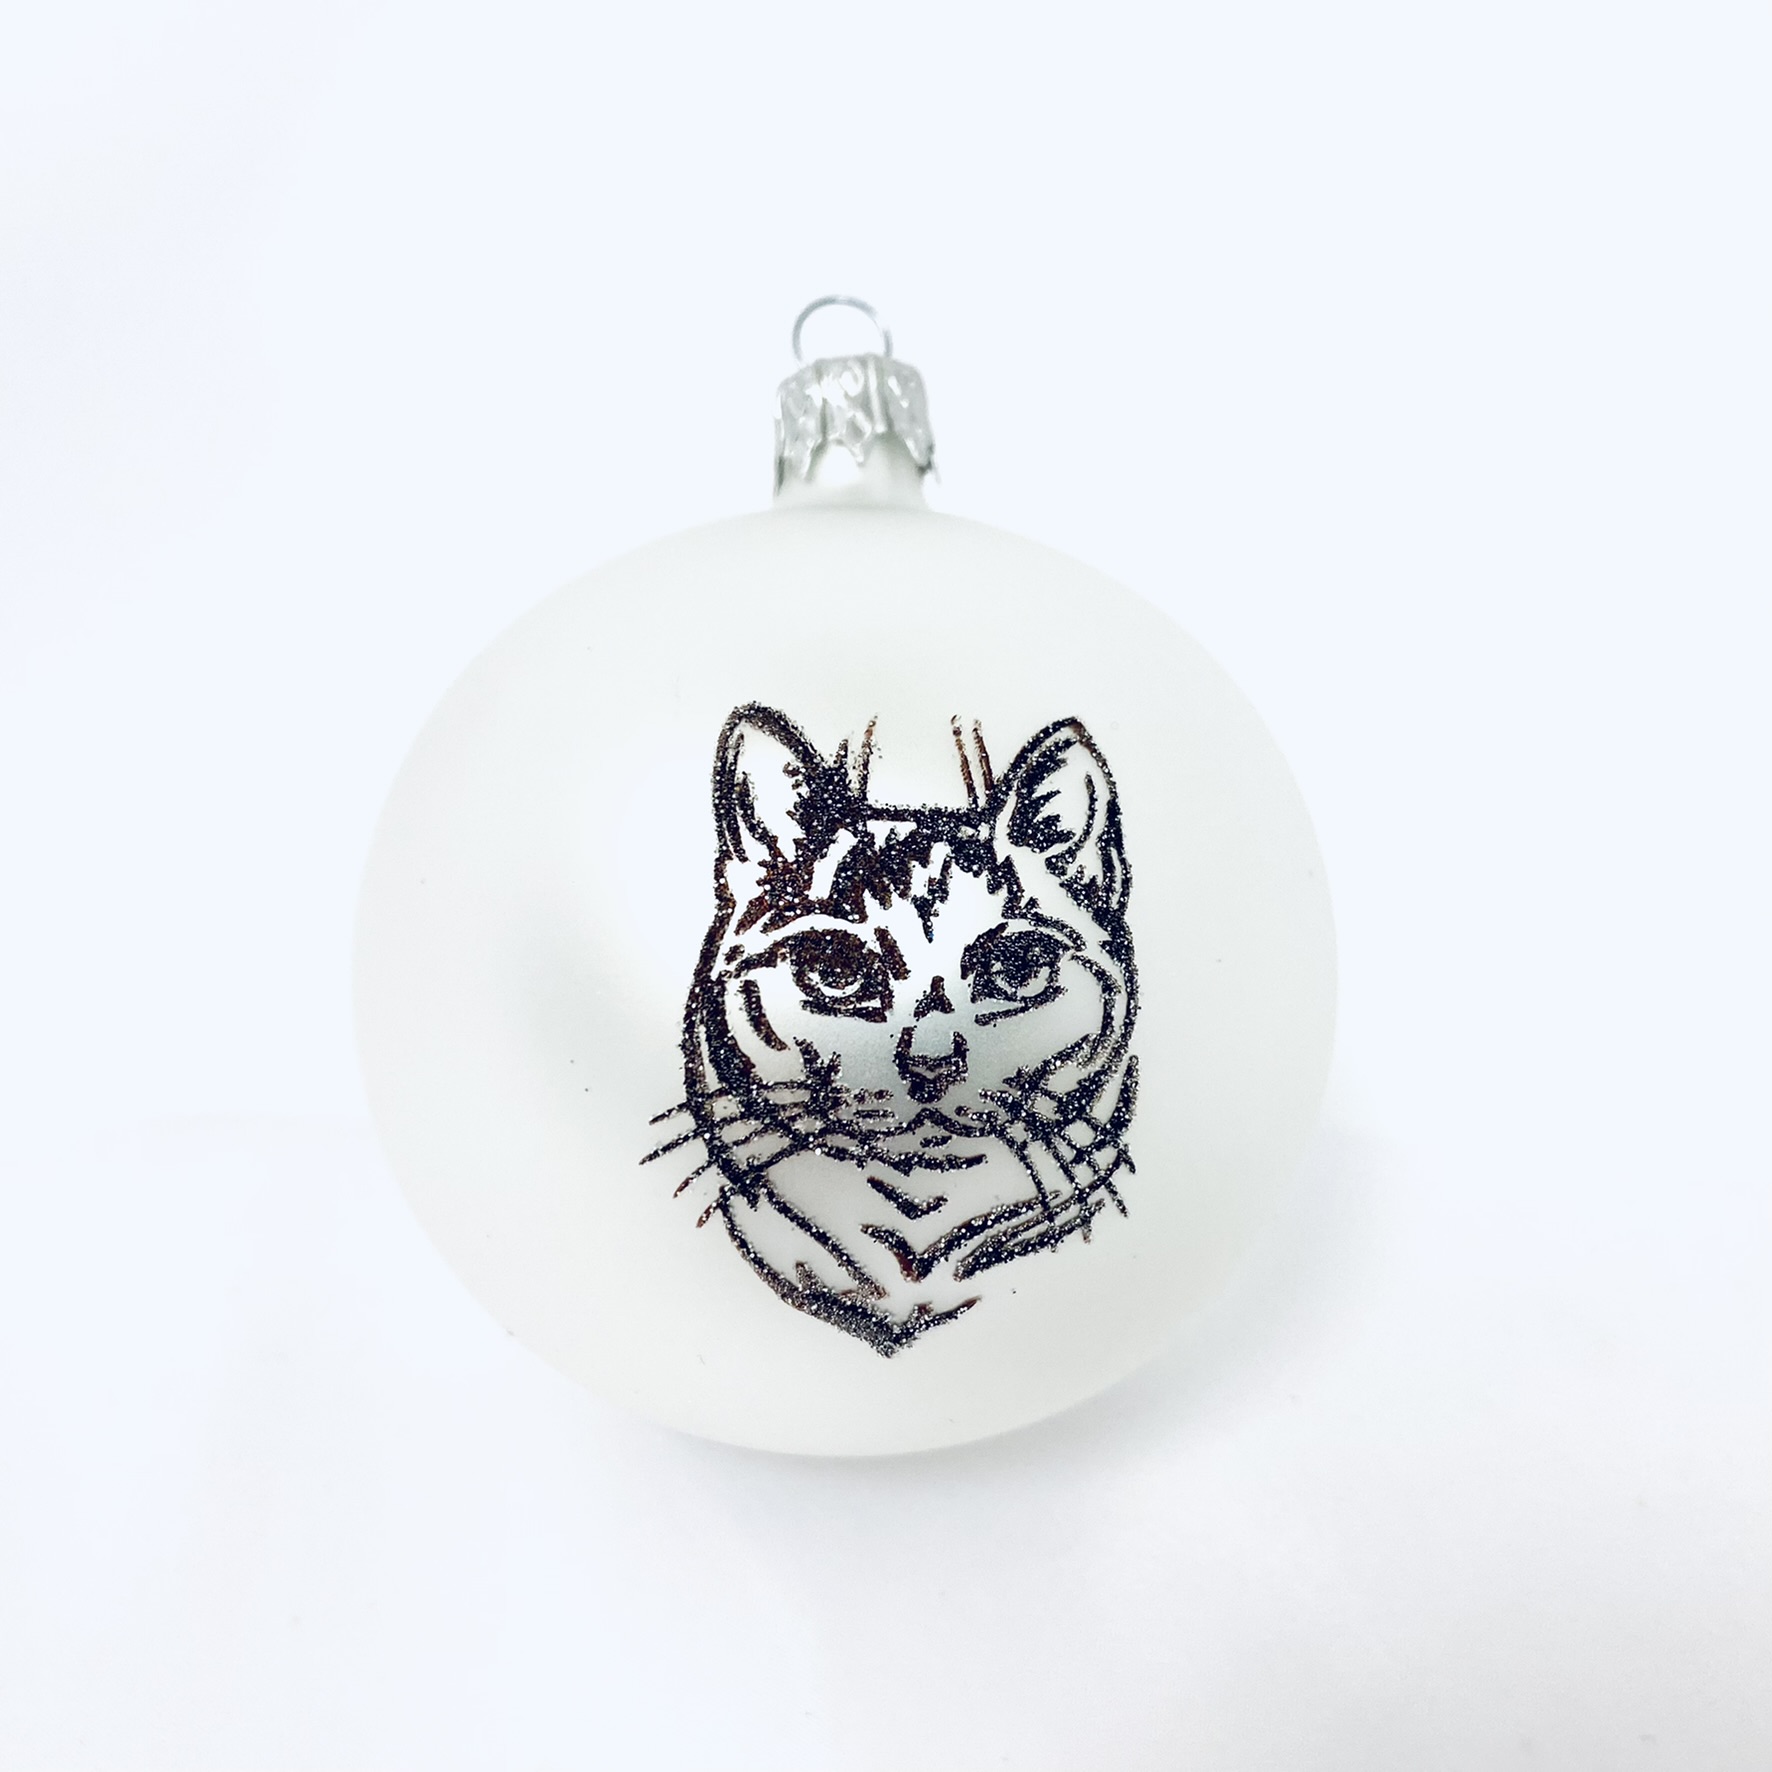 Skleněná vánoční ozdoba s textem na přání, de: kočka, domácí mazlíčci, 1 ks Balení: 1ks, Barva: bílá, Velikost: 8 cm